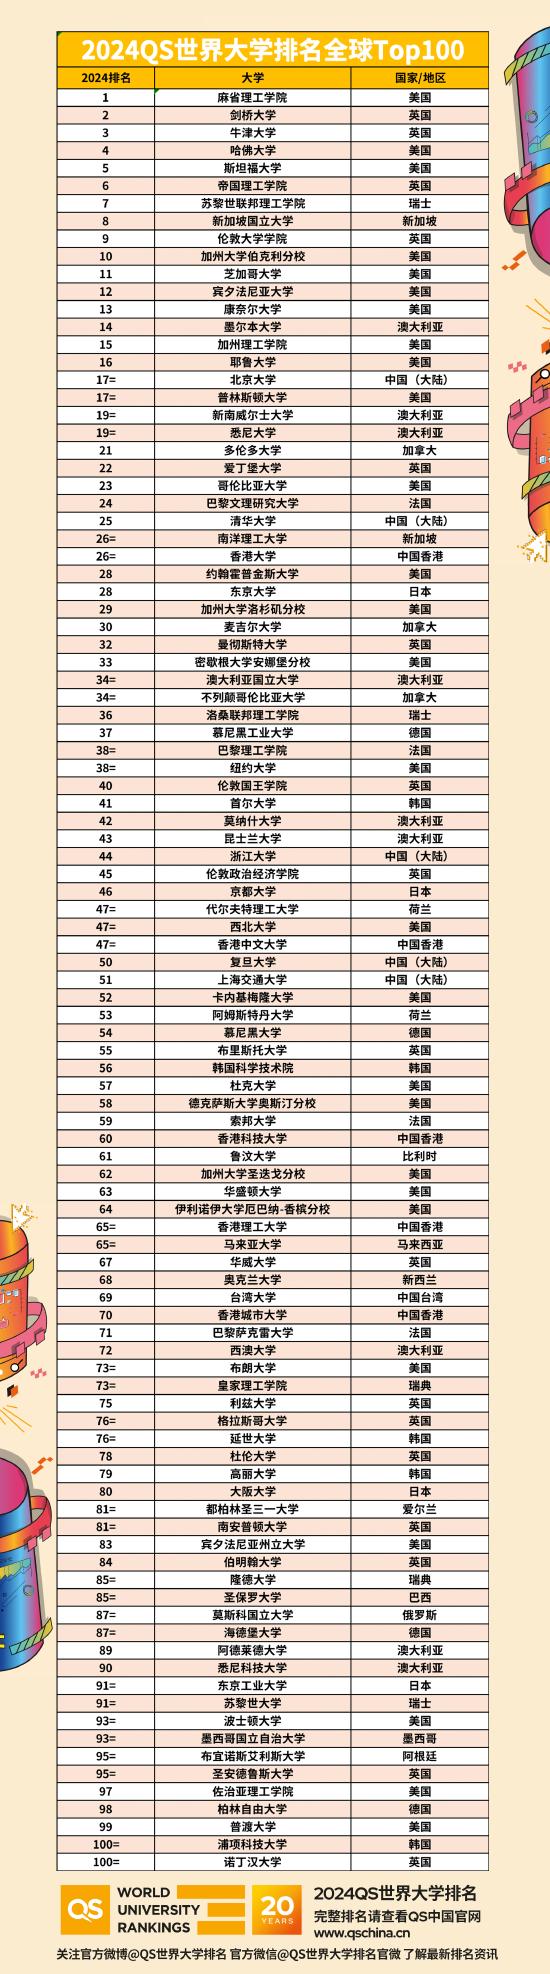 2024QS世界大学排名中国（大陆）高校名单